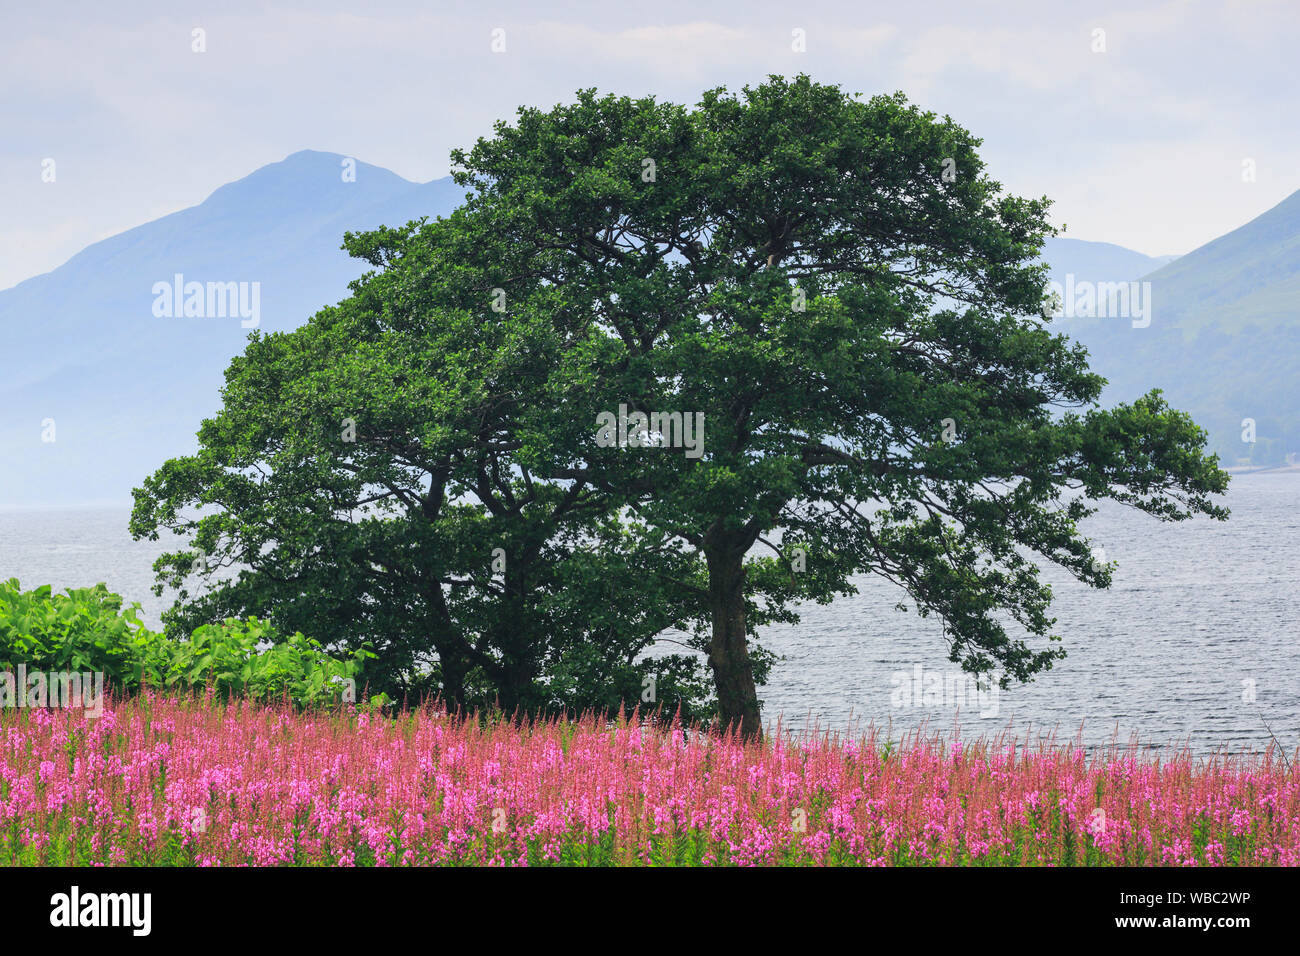 Di Pino silvestre (Pinus sylvestris). Struttura ad albero singolo e fioritura Fireweed accanto a Loch. Highlands scozzesi, Scozia, Gran Bretagna Foto Stock